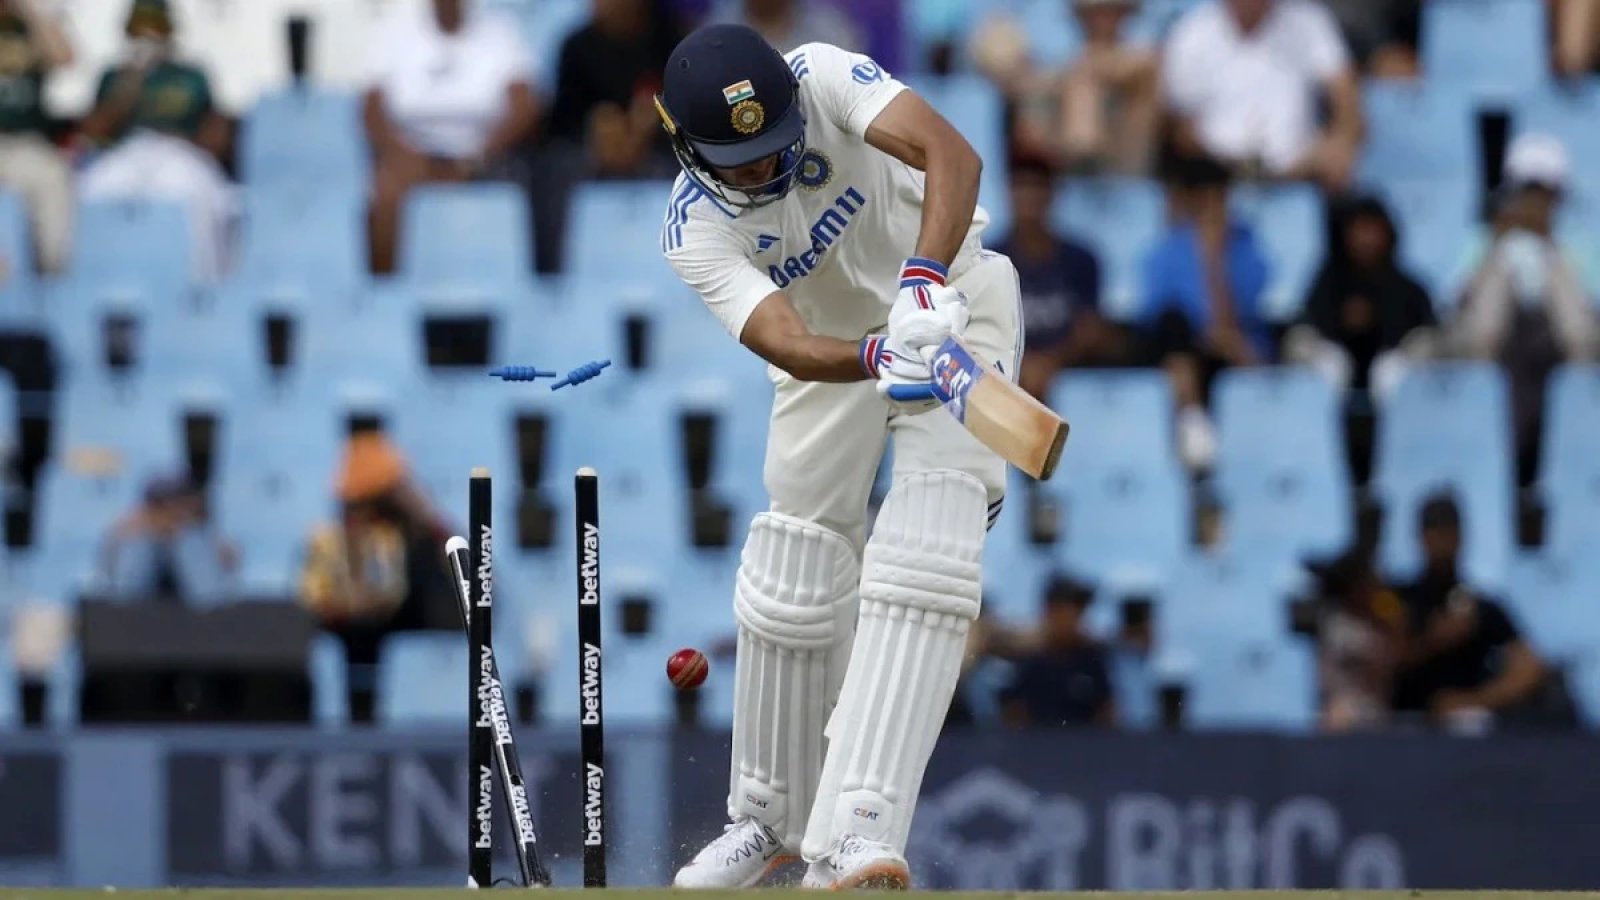 '...उन्हें टेस्ट क्रिकेट नहीं खेलना चाहिए': IND vs SA दूसरे टेस्ट की पिच और बल्लेबाजी रणनीति पर गावस्कर का सीधा-सीधा फैसला